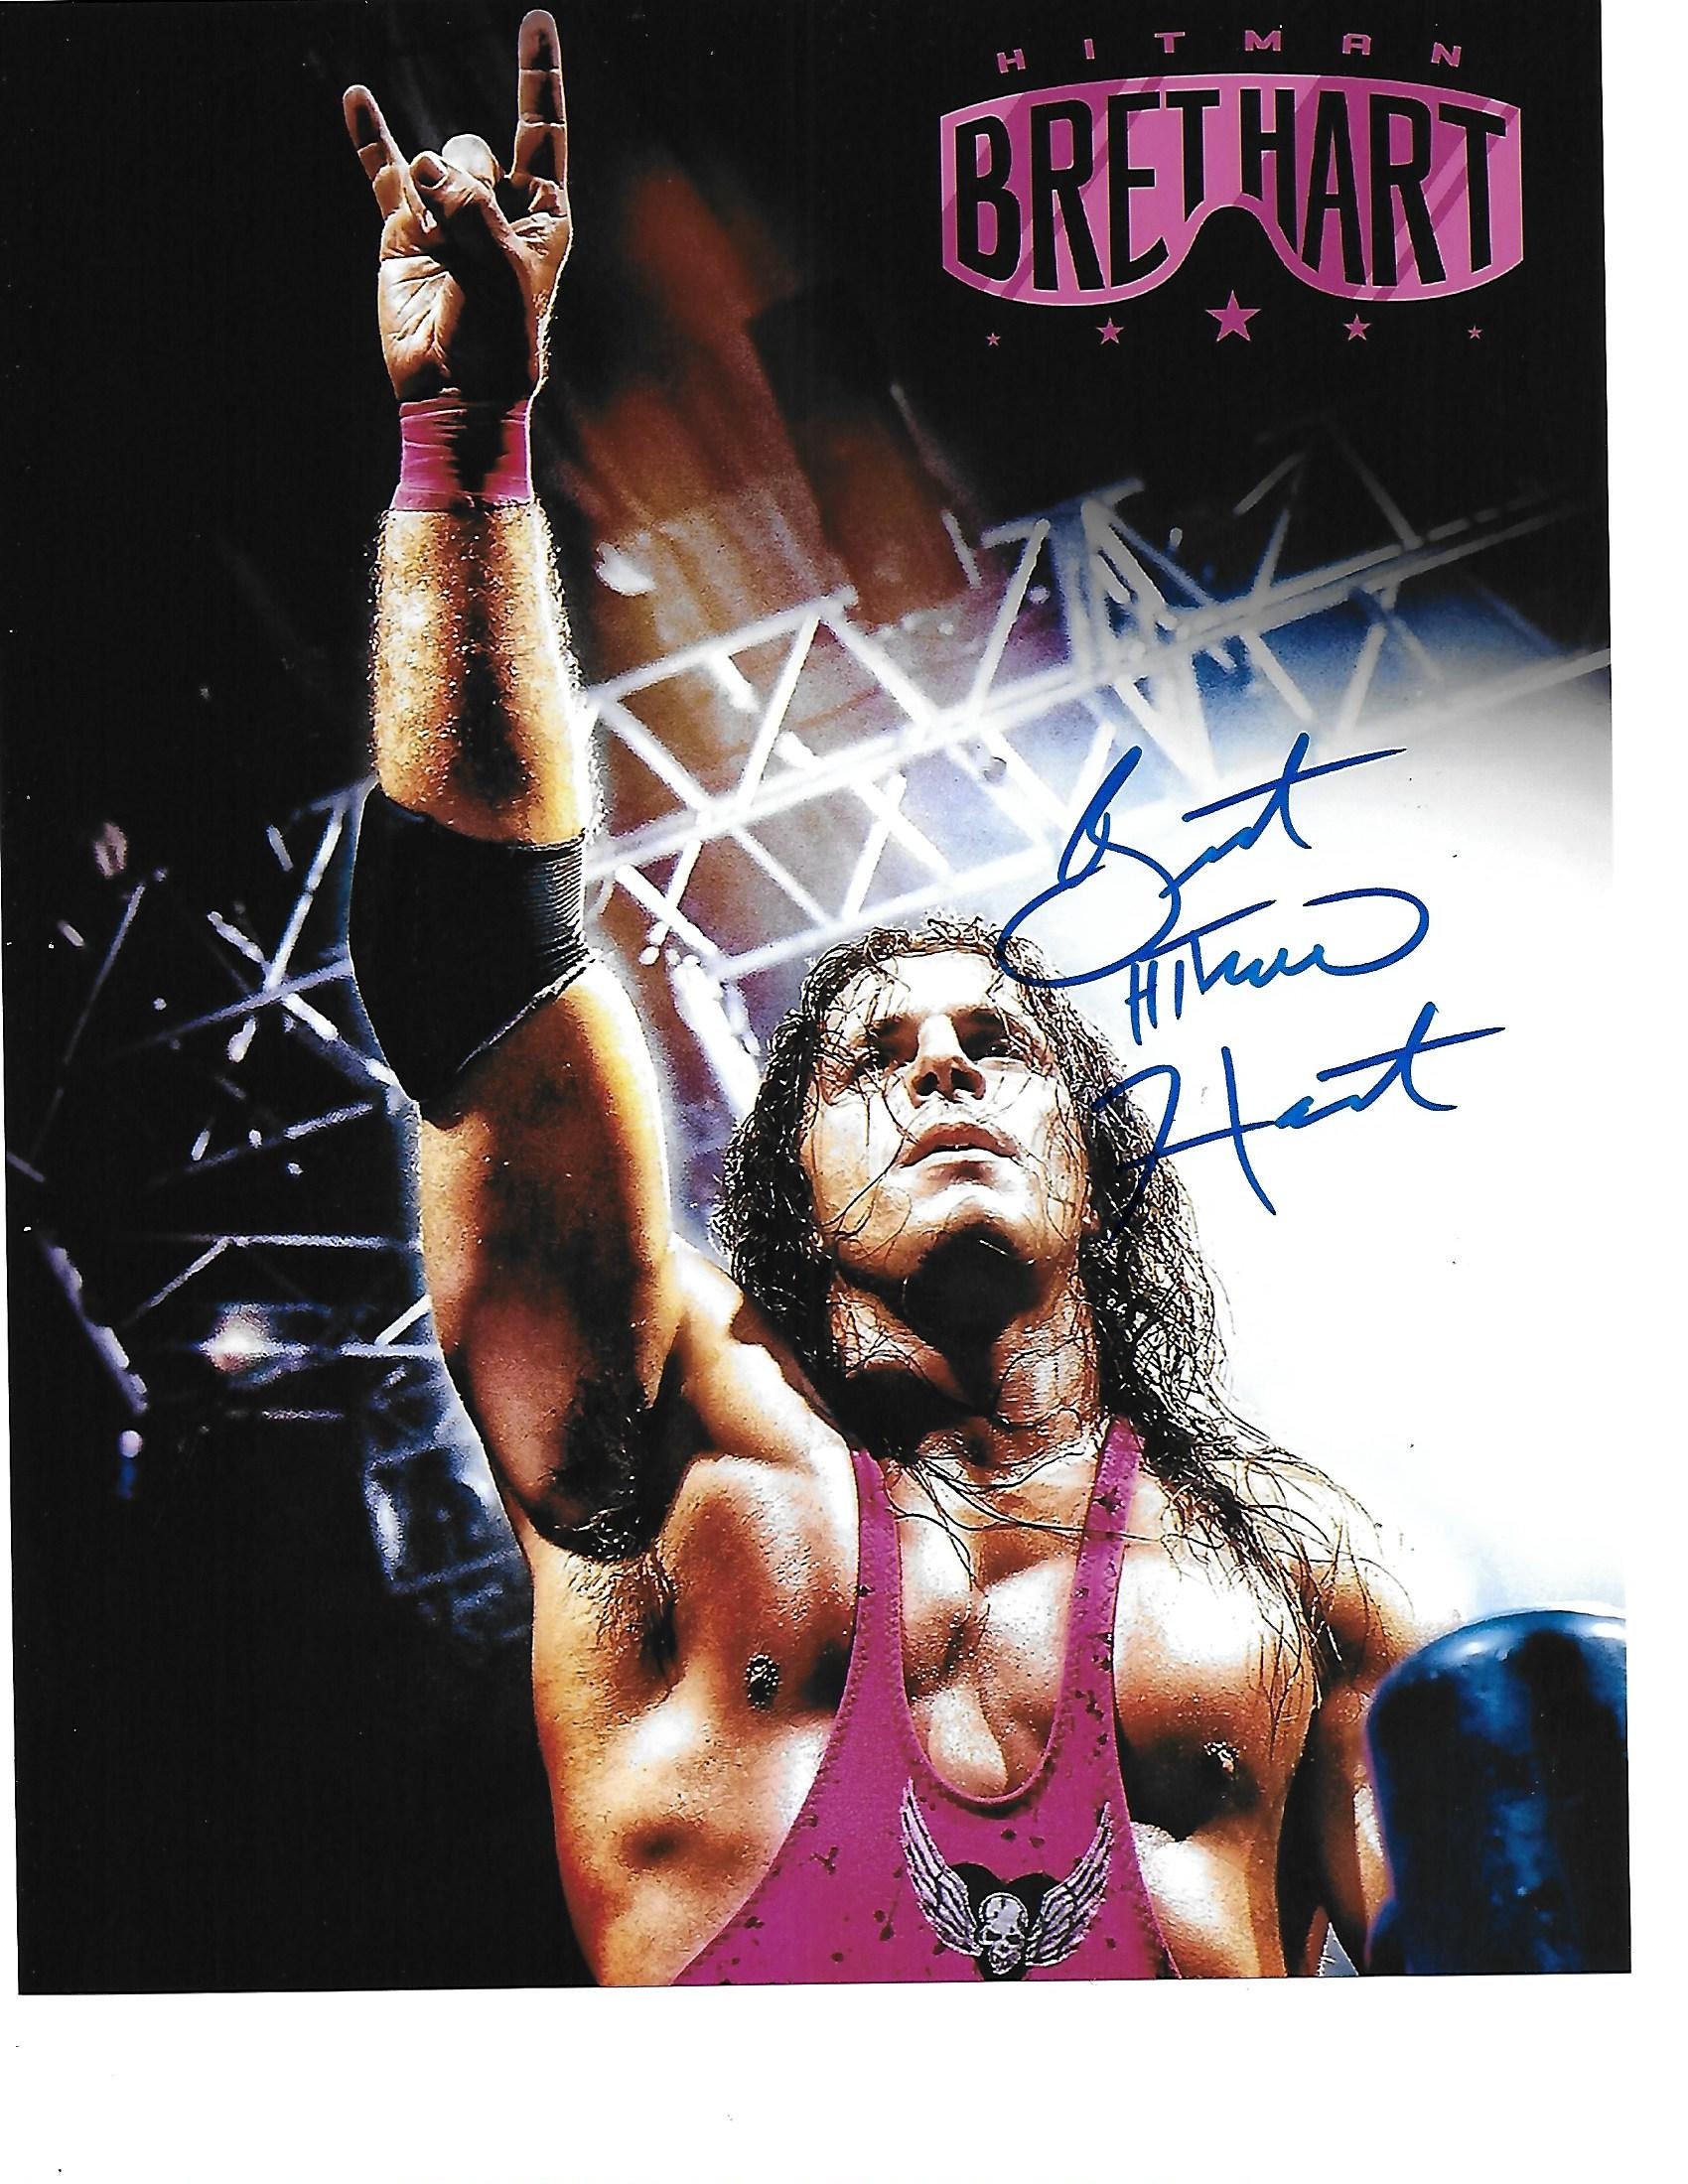 Kamala Signed 16x20 WWF Wrestling Promo Photos Wrestler Legend WWE Pose WCW